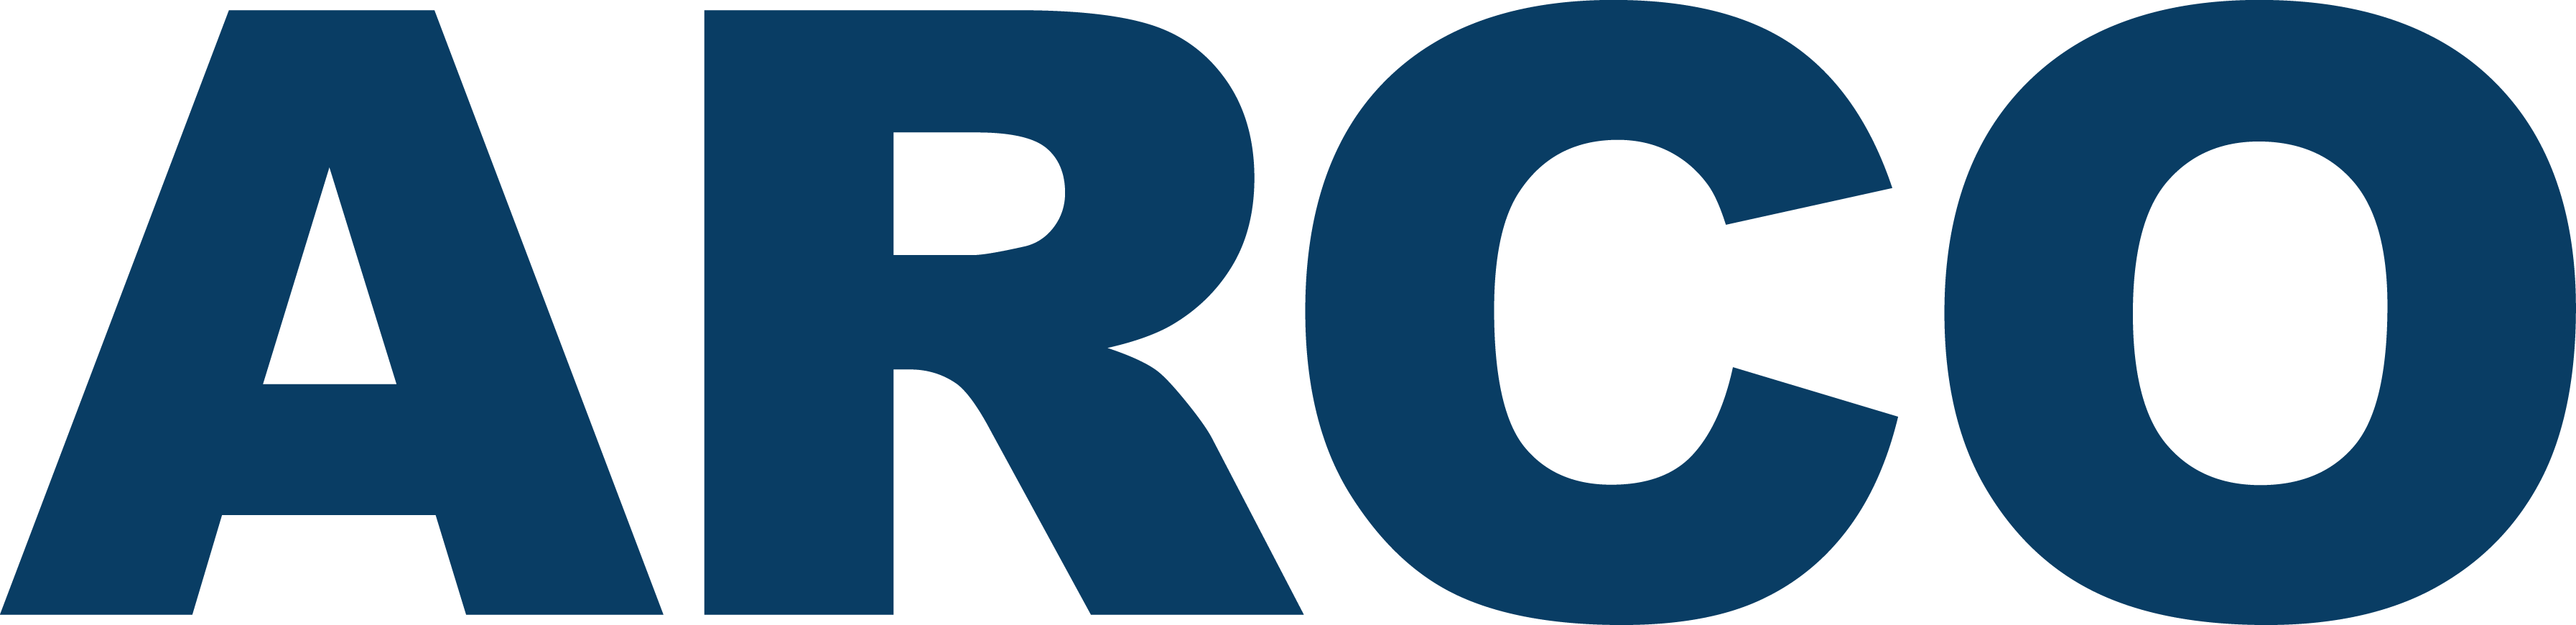 ARCO Construction Company Company Logo